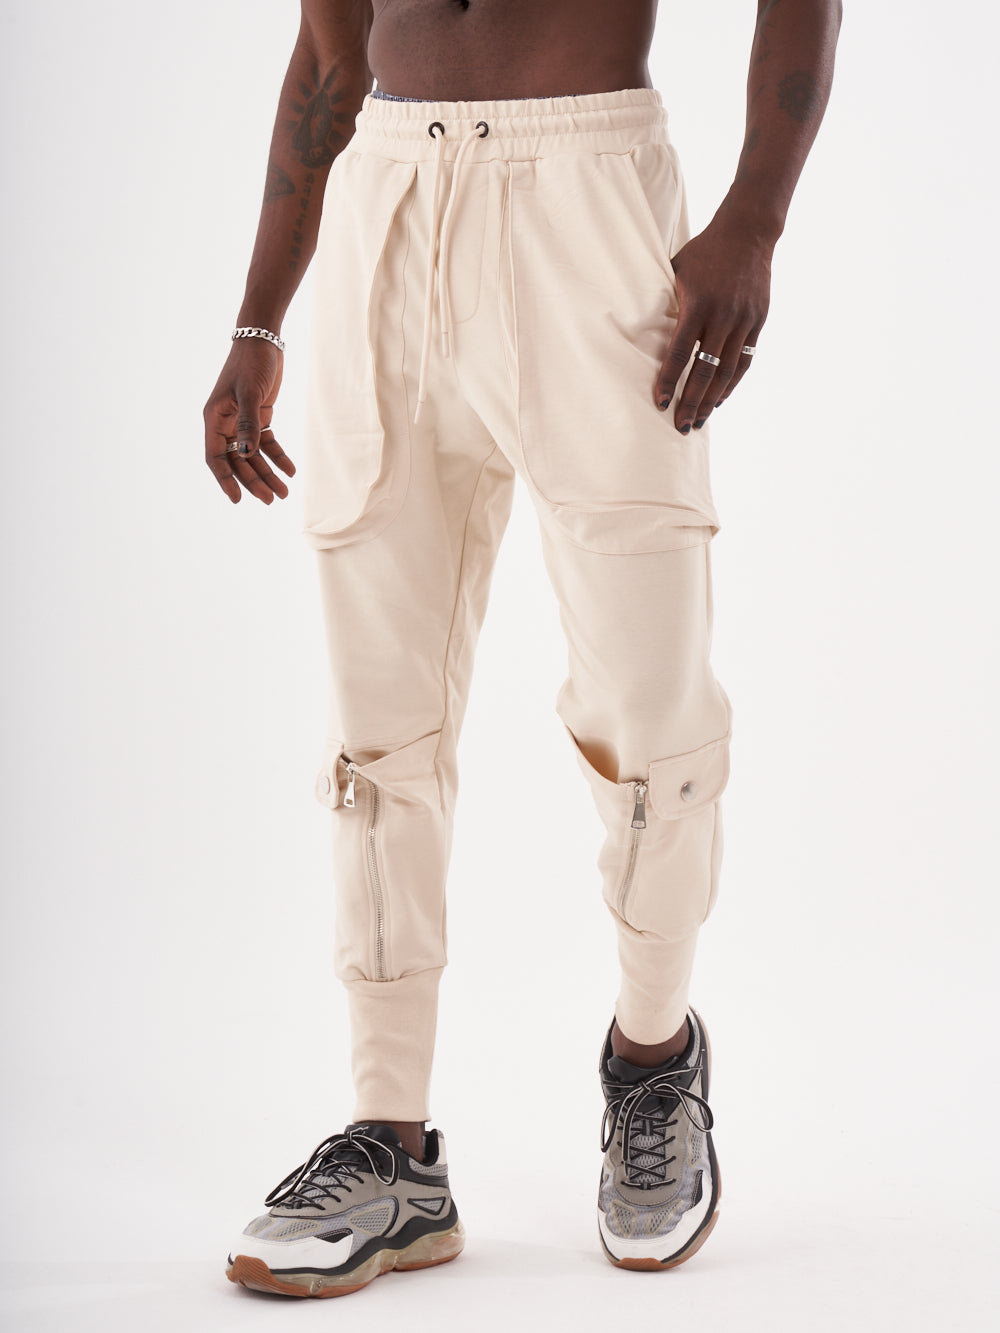 - Style & SERNES Streetwear Joggers Men for Sweatpants